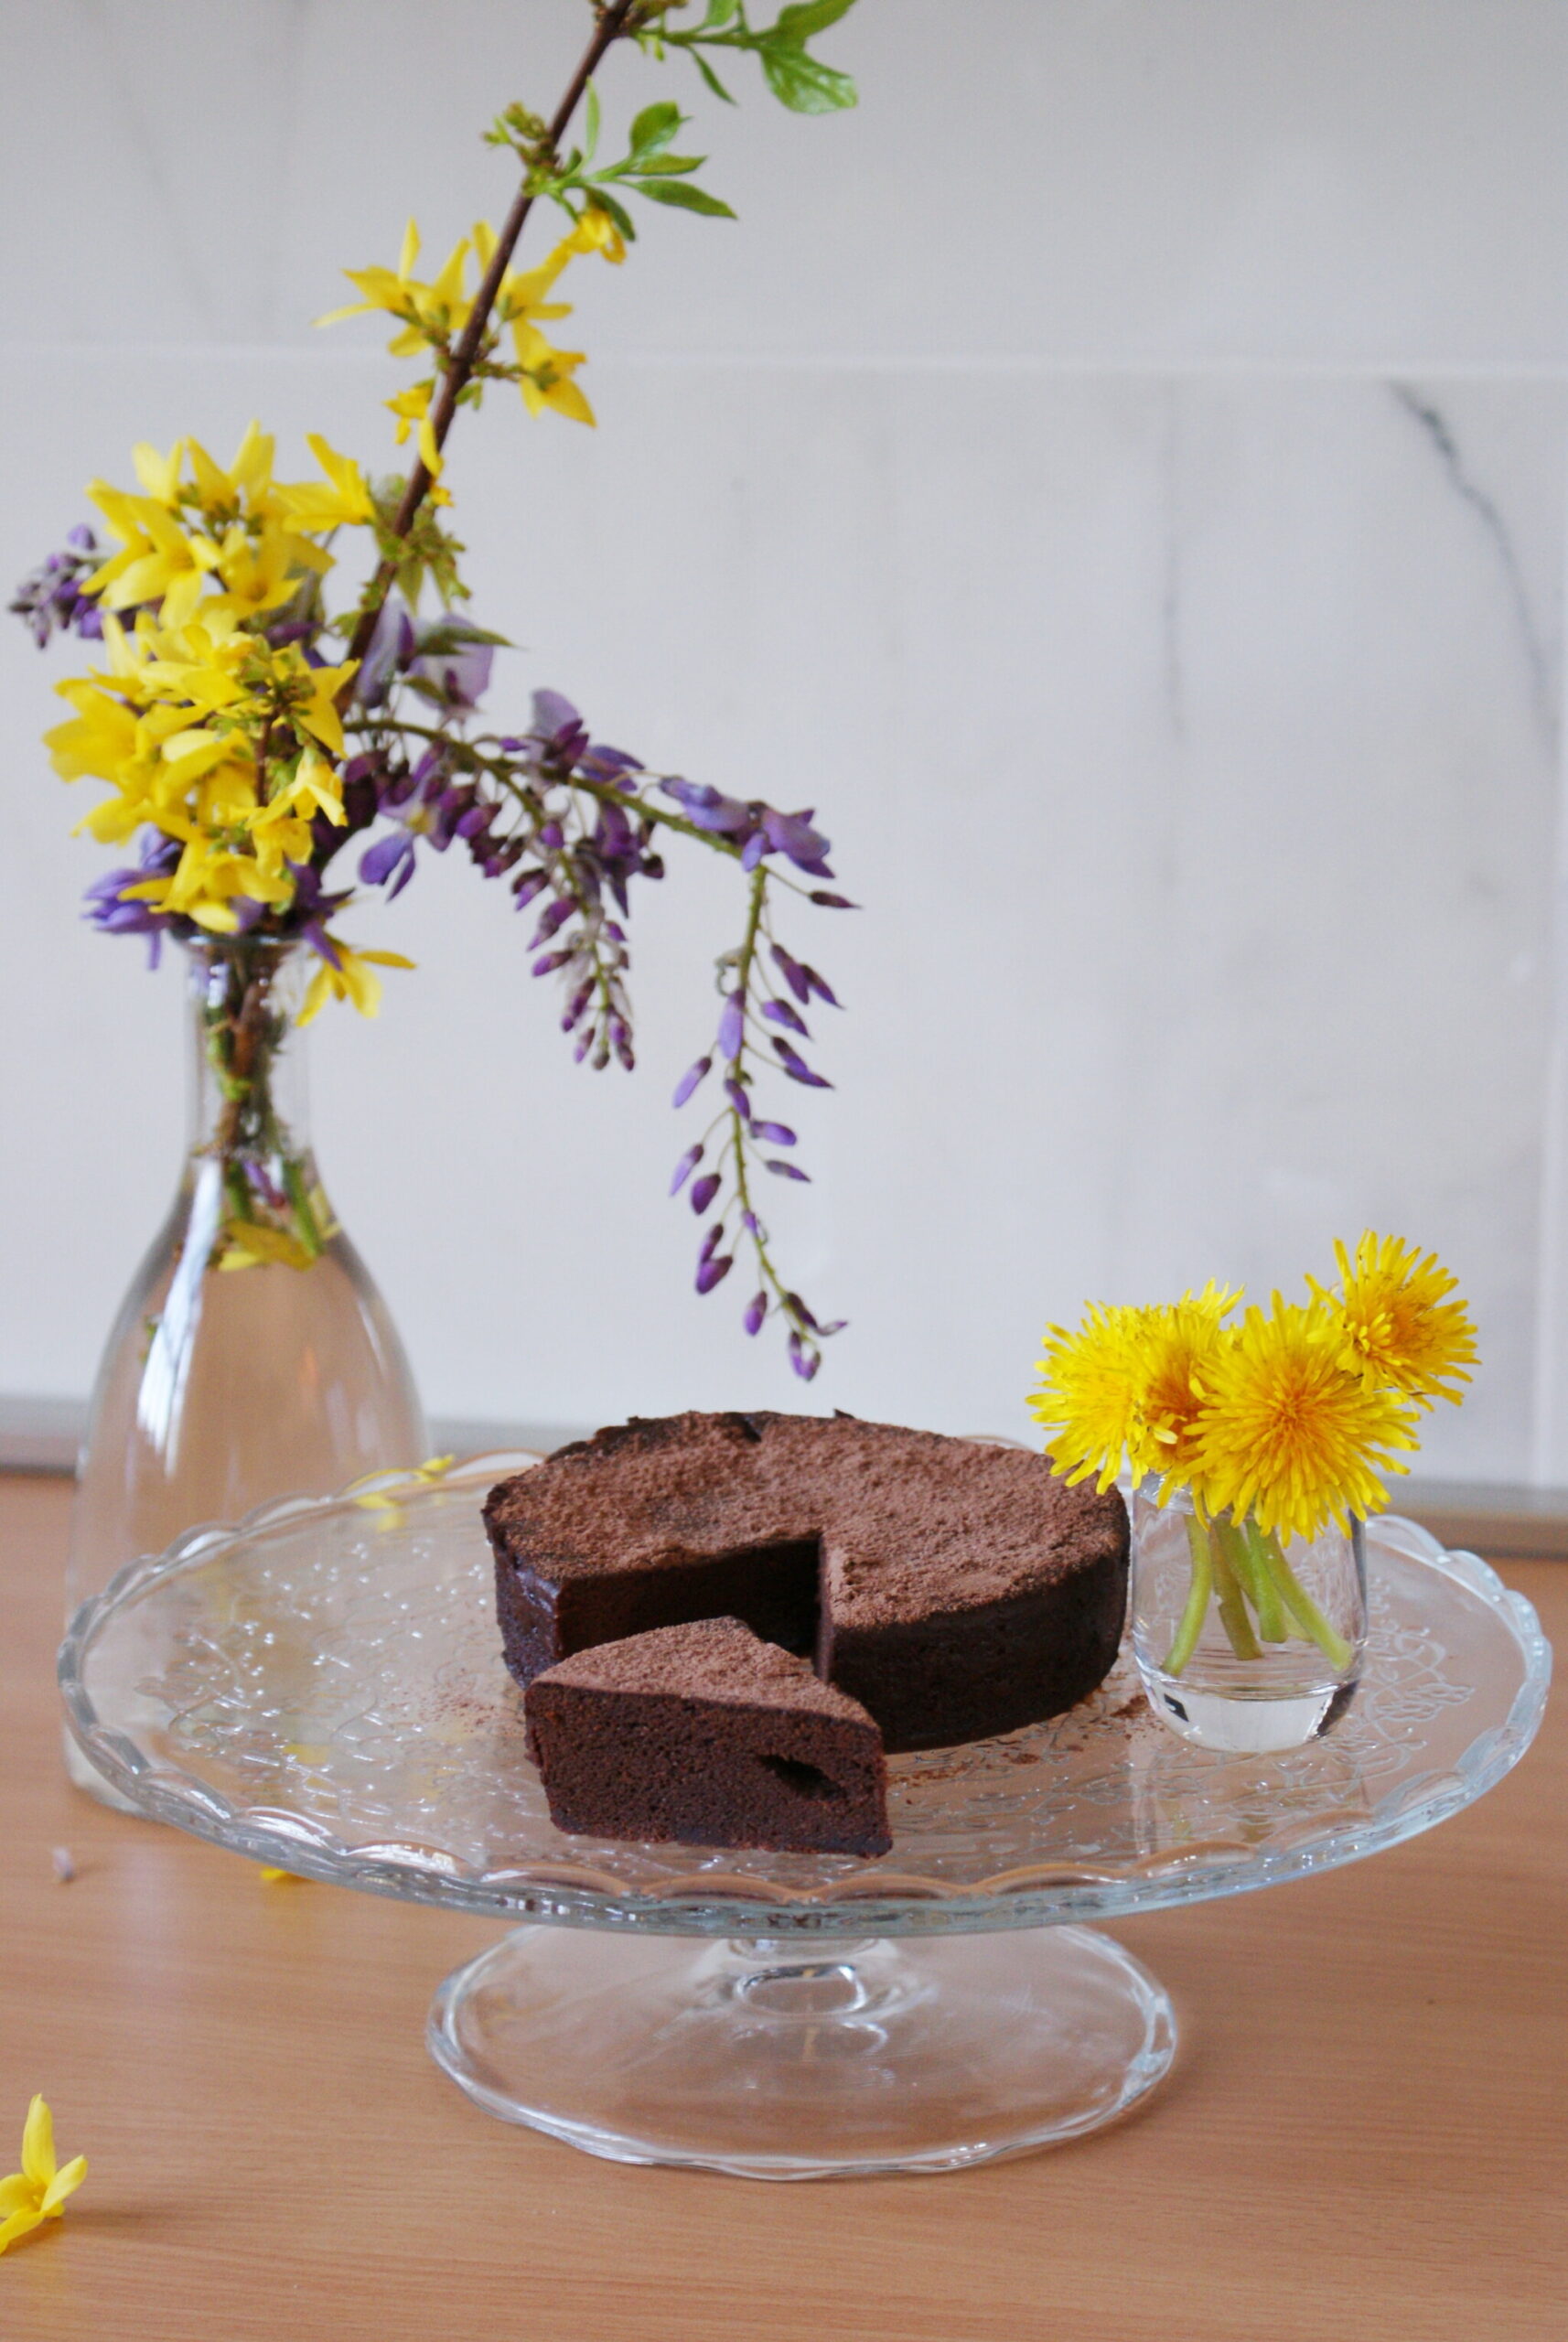 10 ten minute chocolate cake microwave recipe easy simple few ingredients ultimate fluffy last minute francinesplaceblog